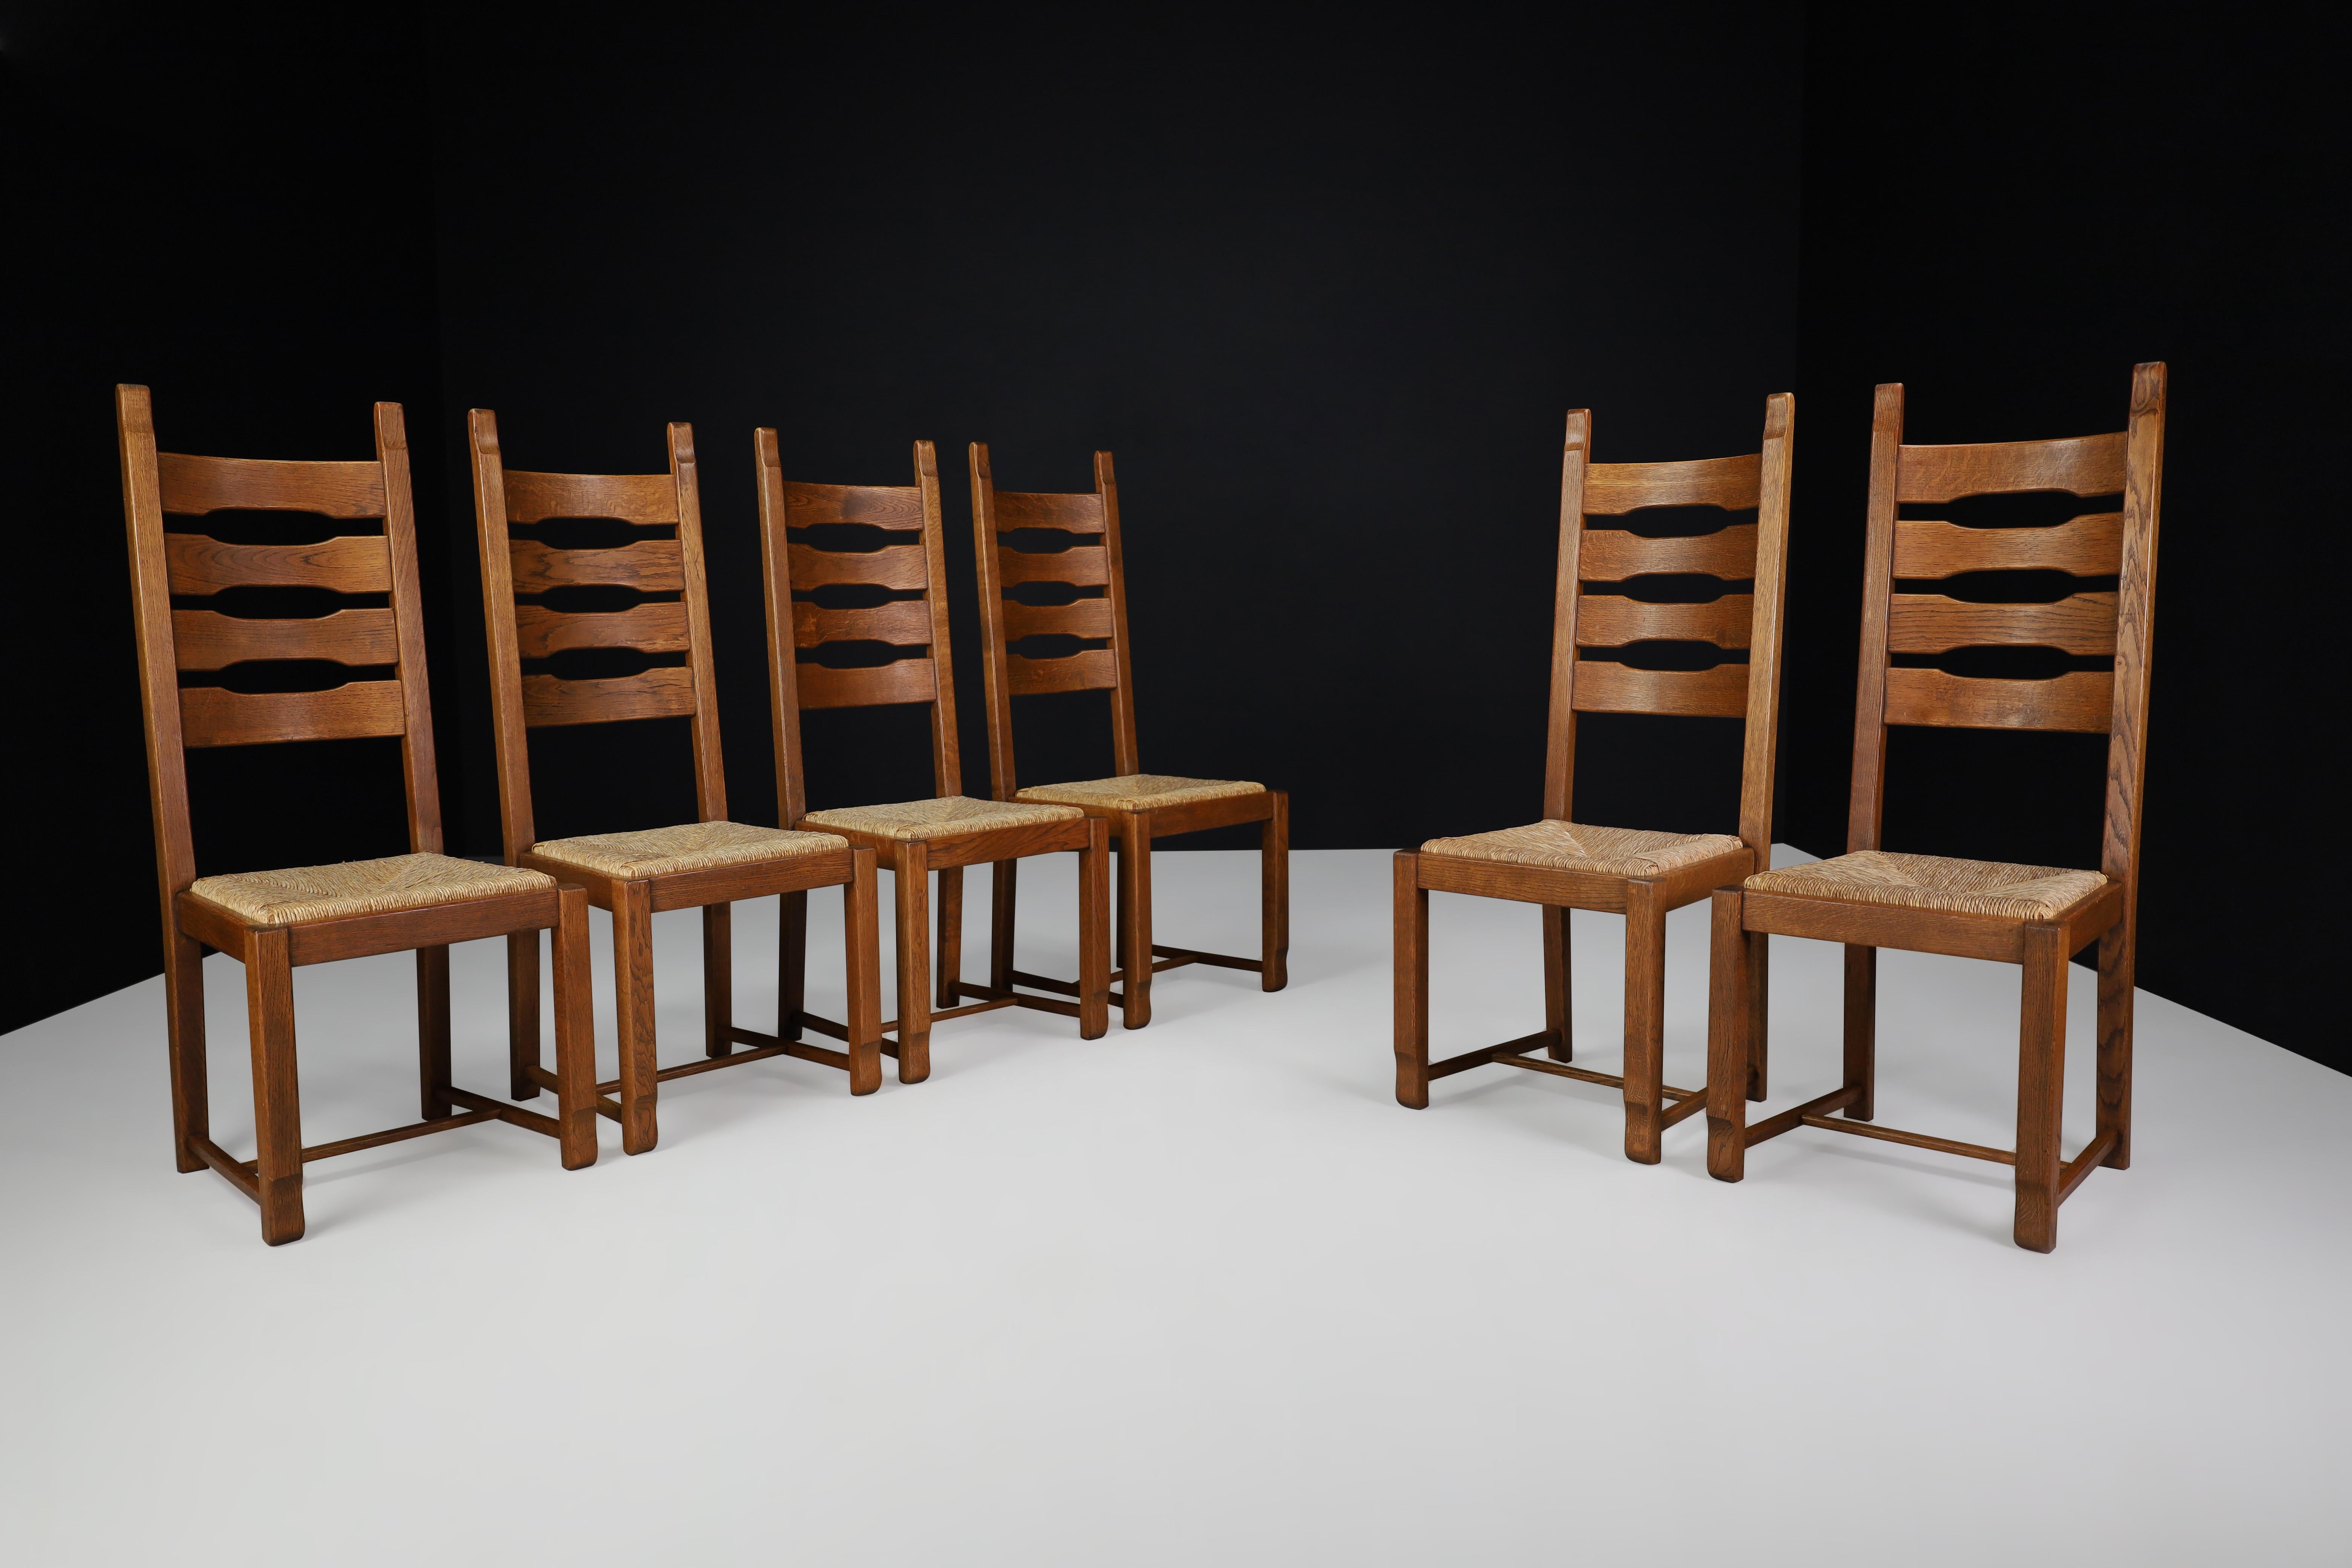 Esszimmerstühle mit hoher Rückenlehne aus Eiche und Binsen, Frankreich, 1960er Jahre 

Satz mit sechs hohen Rückenlehnen  Esszimmerstühle aus Eiche und Binsen, Frankreich, 1960er Jahre. Diese Stühle sind vollständig aus Eichenholz und Binsen